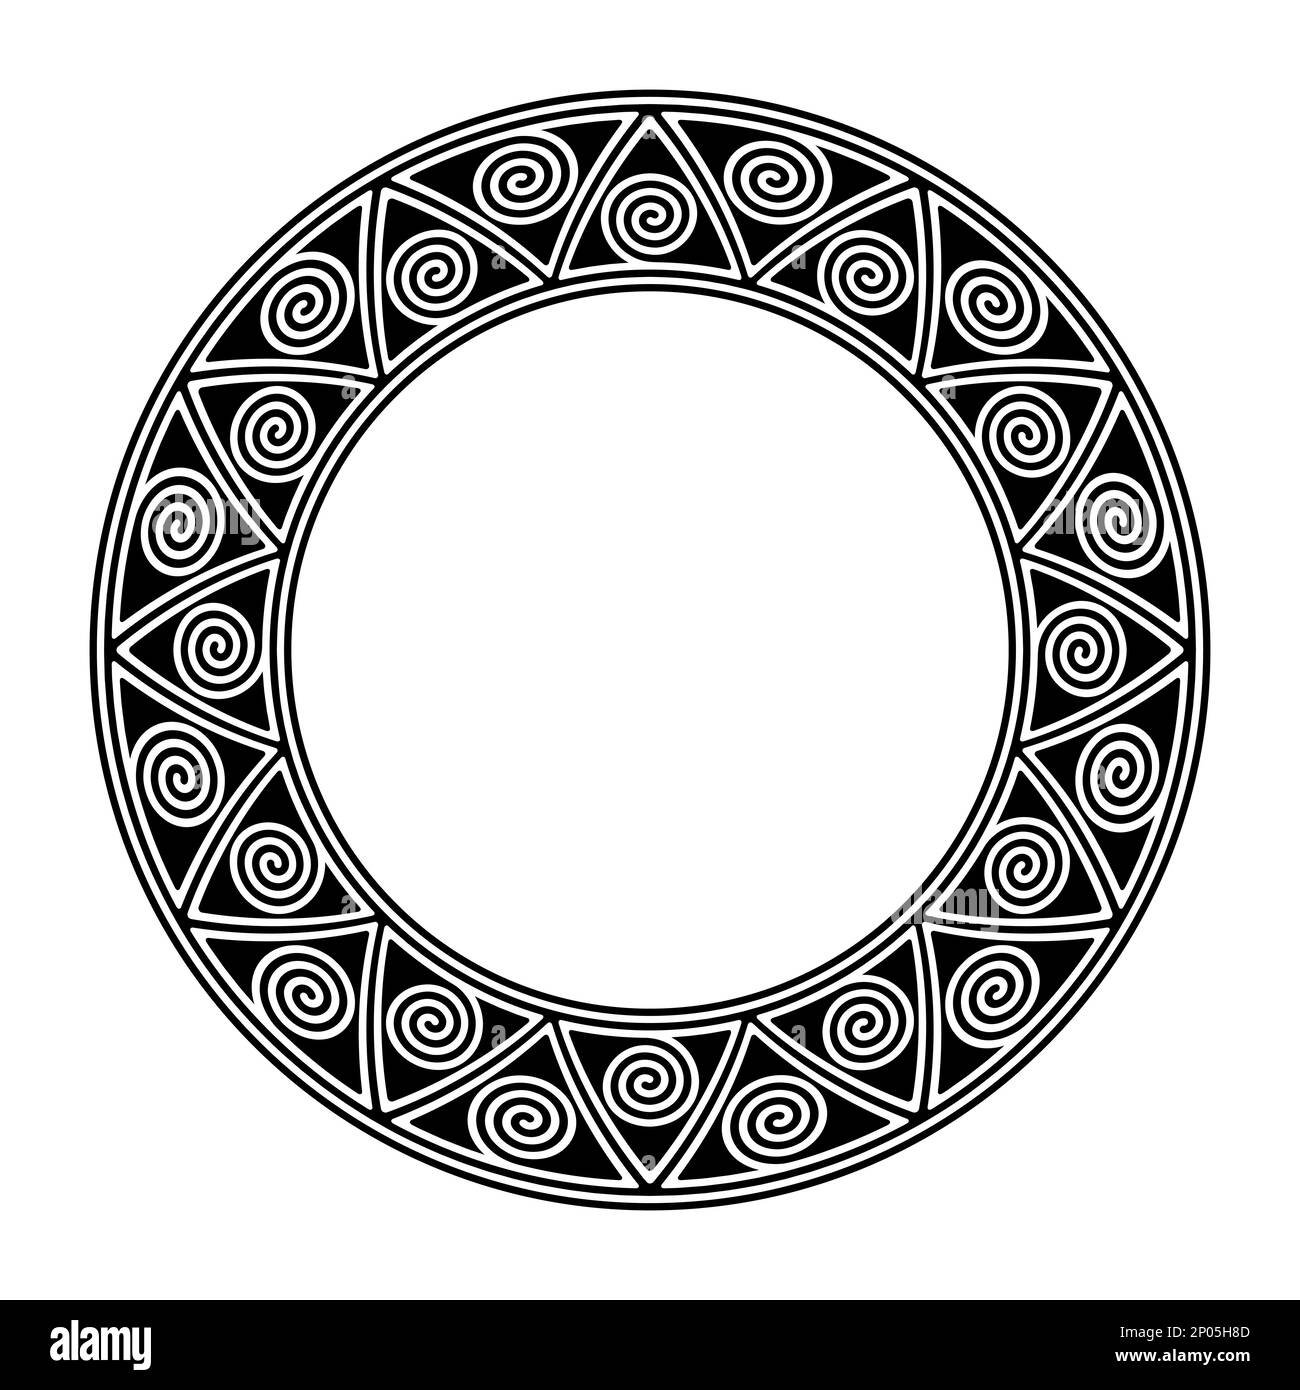 Kreisrahmen mit einem Muster aus Spiralen in Dreiecken. Dekorativer Rand, inspiriert von traditionellen Töpfermotiven der Mimbres. Stockfoto